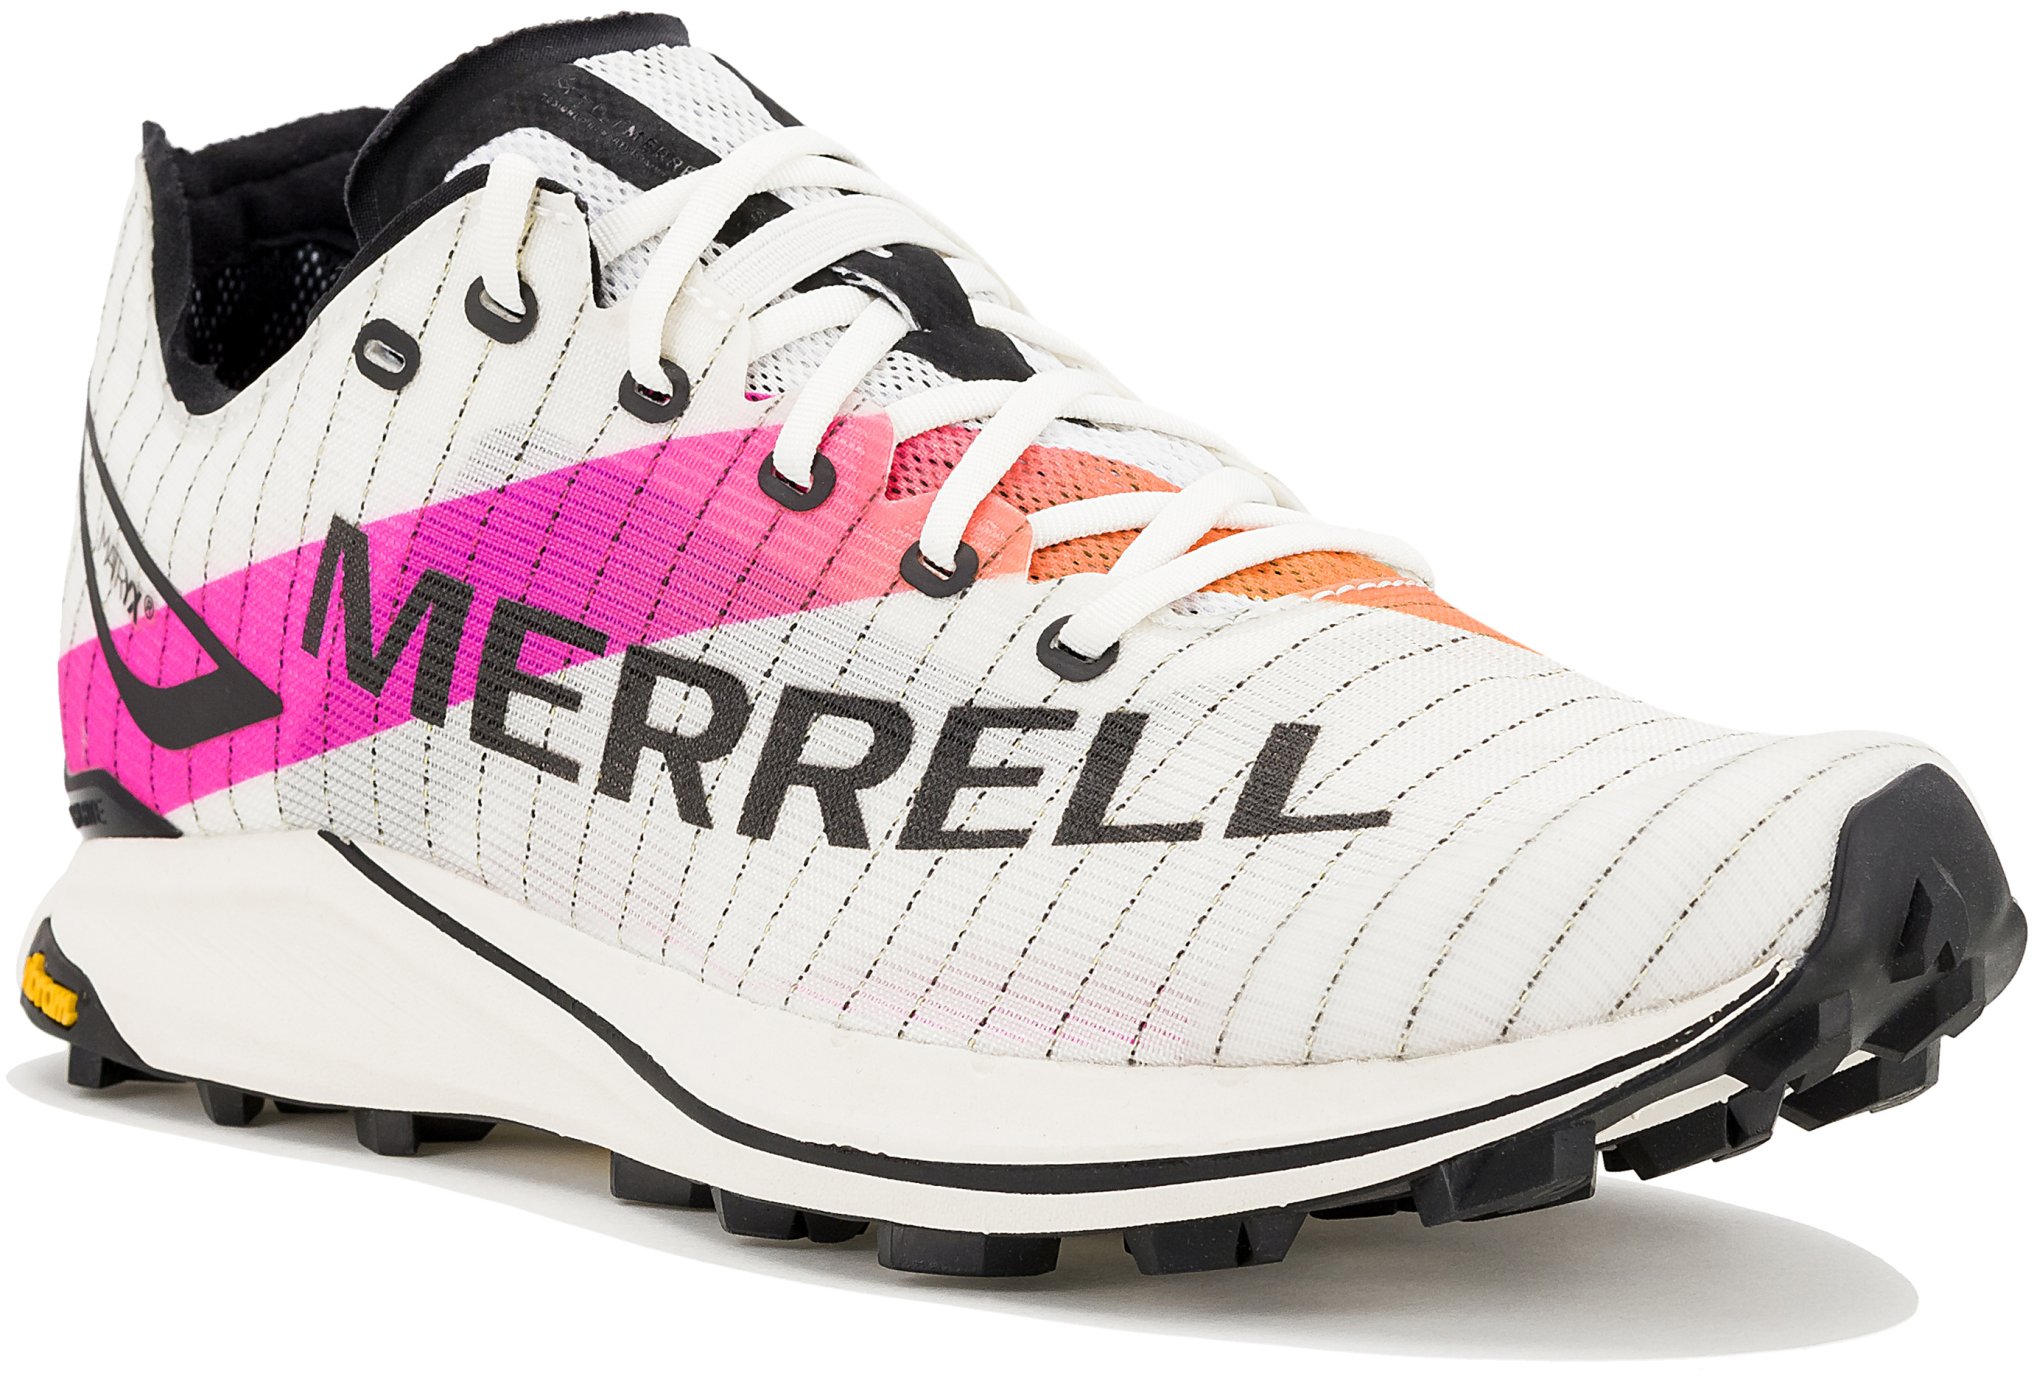 Merrell MTL Skyfire 2 Matryx W Chaussures running femme